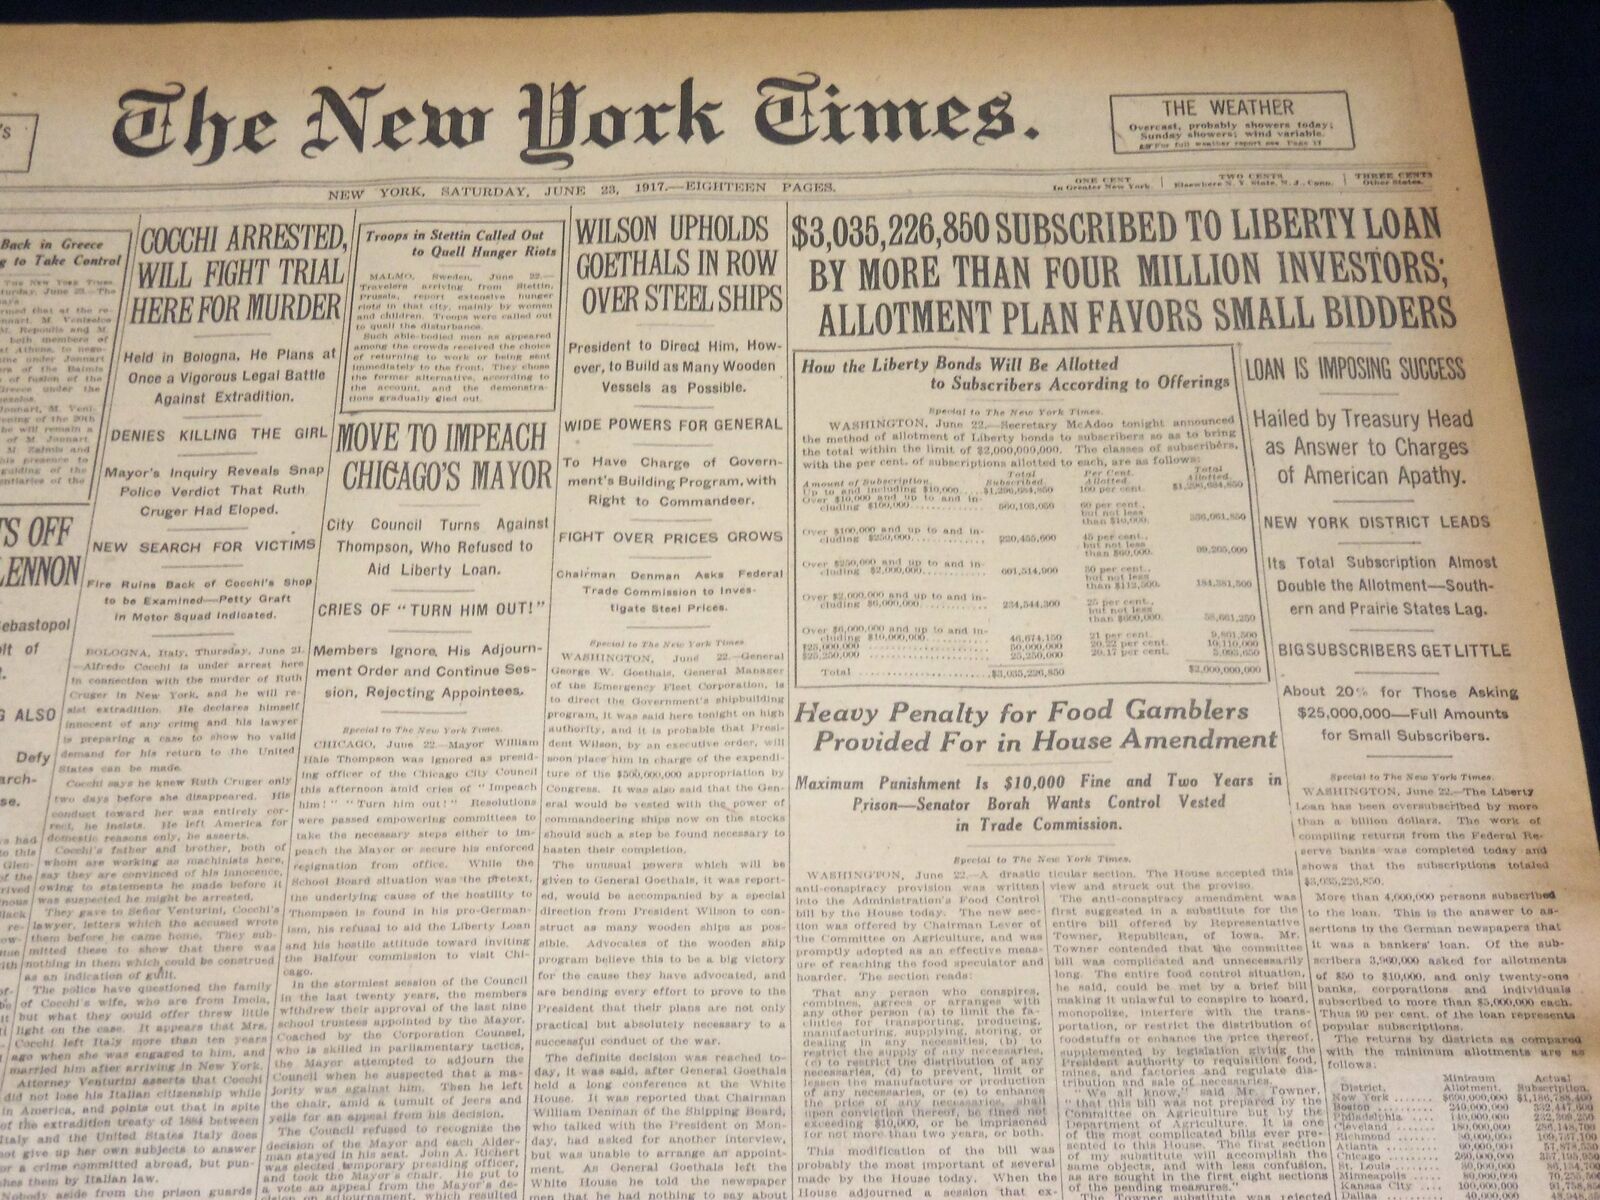 1917 JUNE 23 NEW YORK TIMES NEWSPAPER - MARCONI TELLS NEW WAR HISTORY - NT 7806